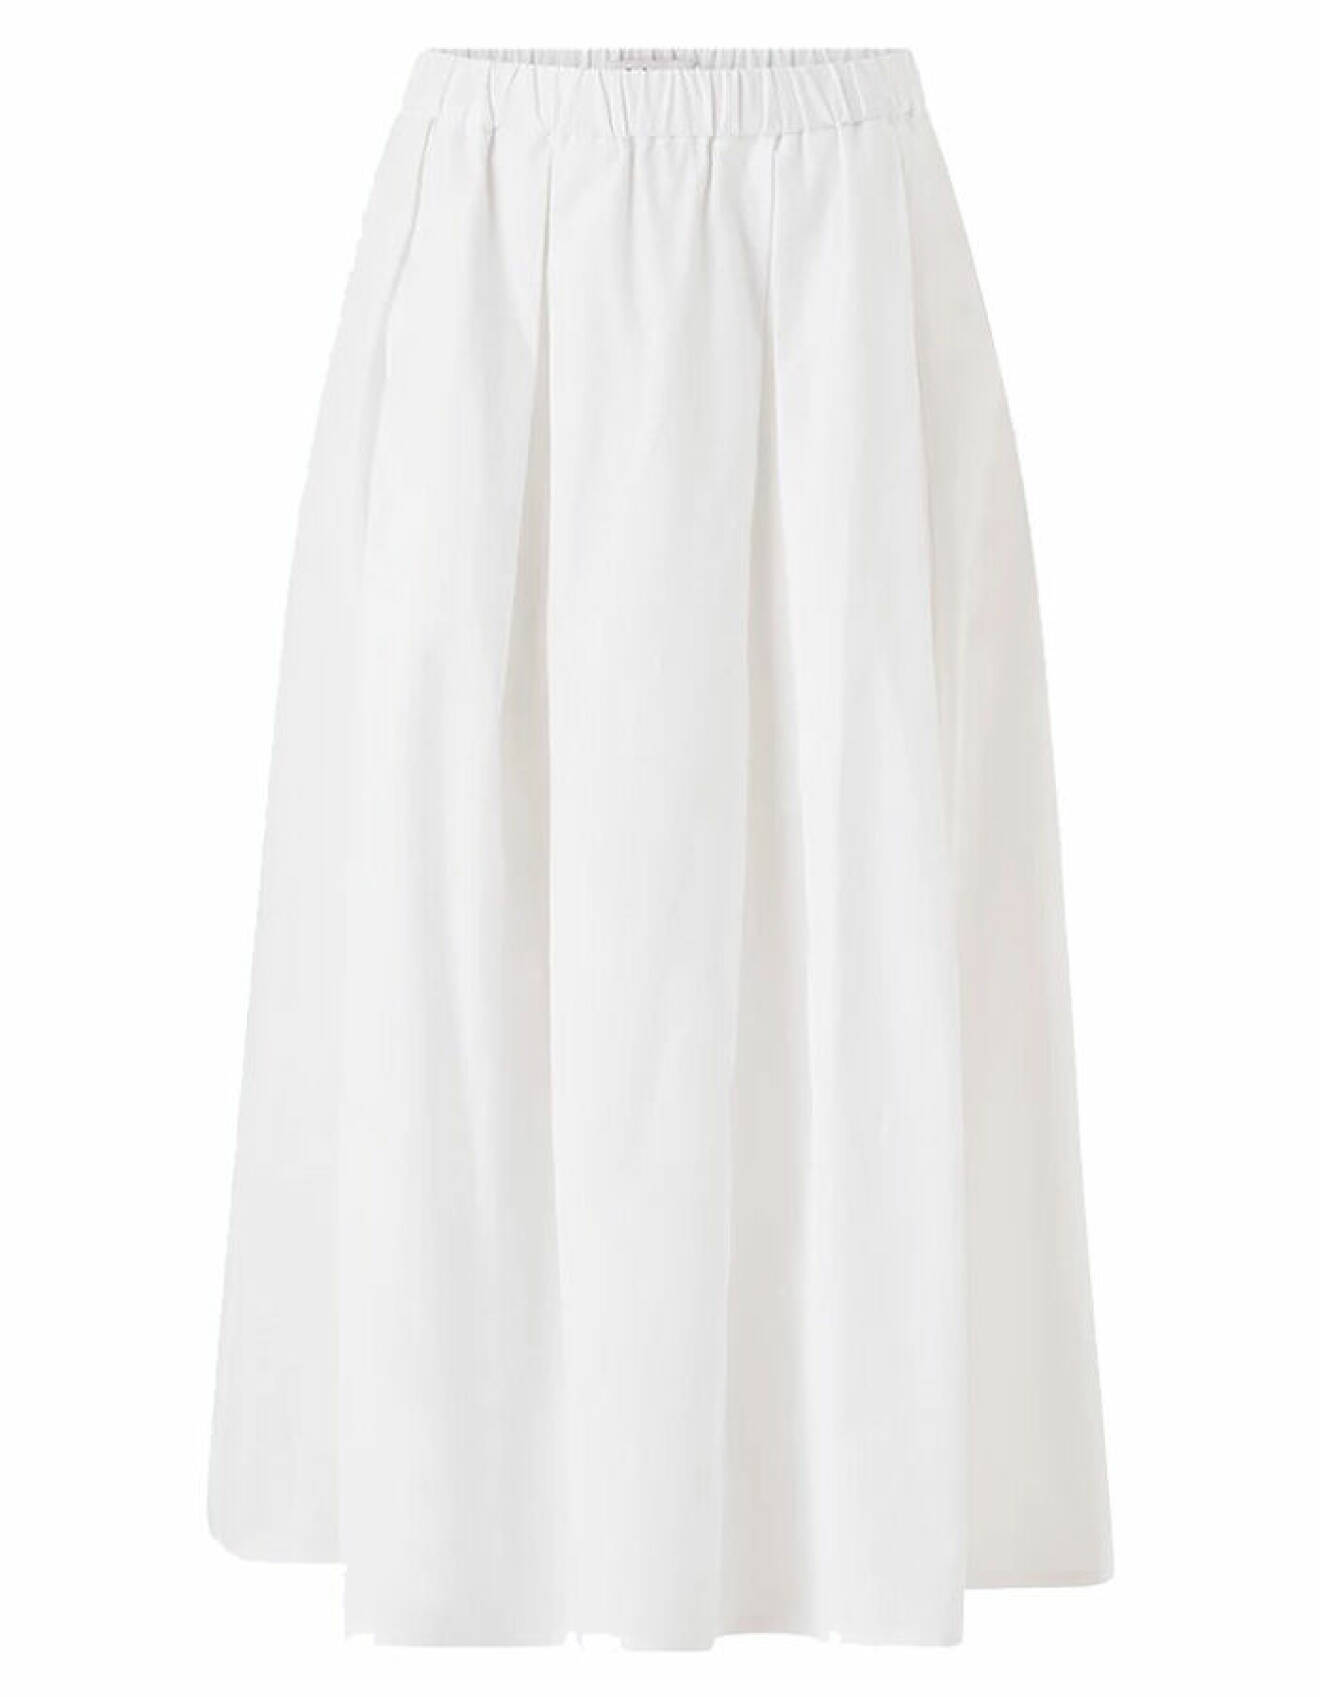 vit kjol med elatiskt midjeband från stylein